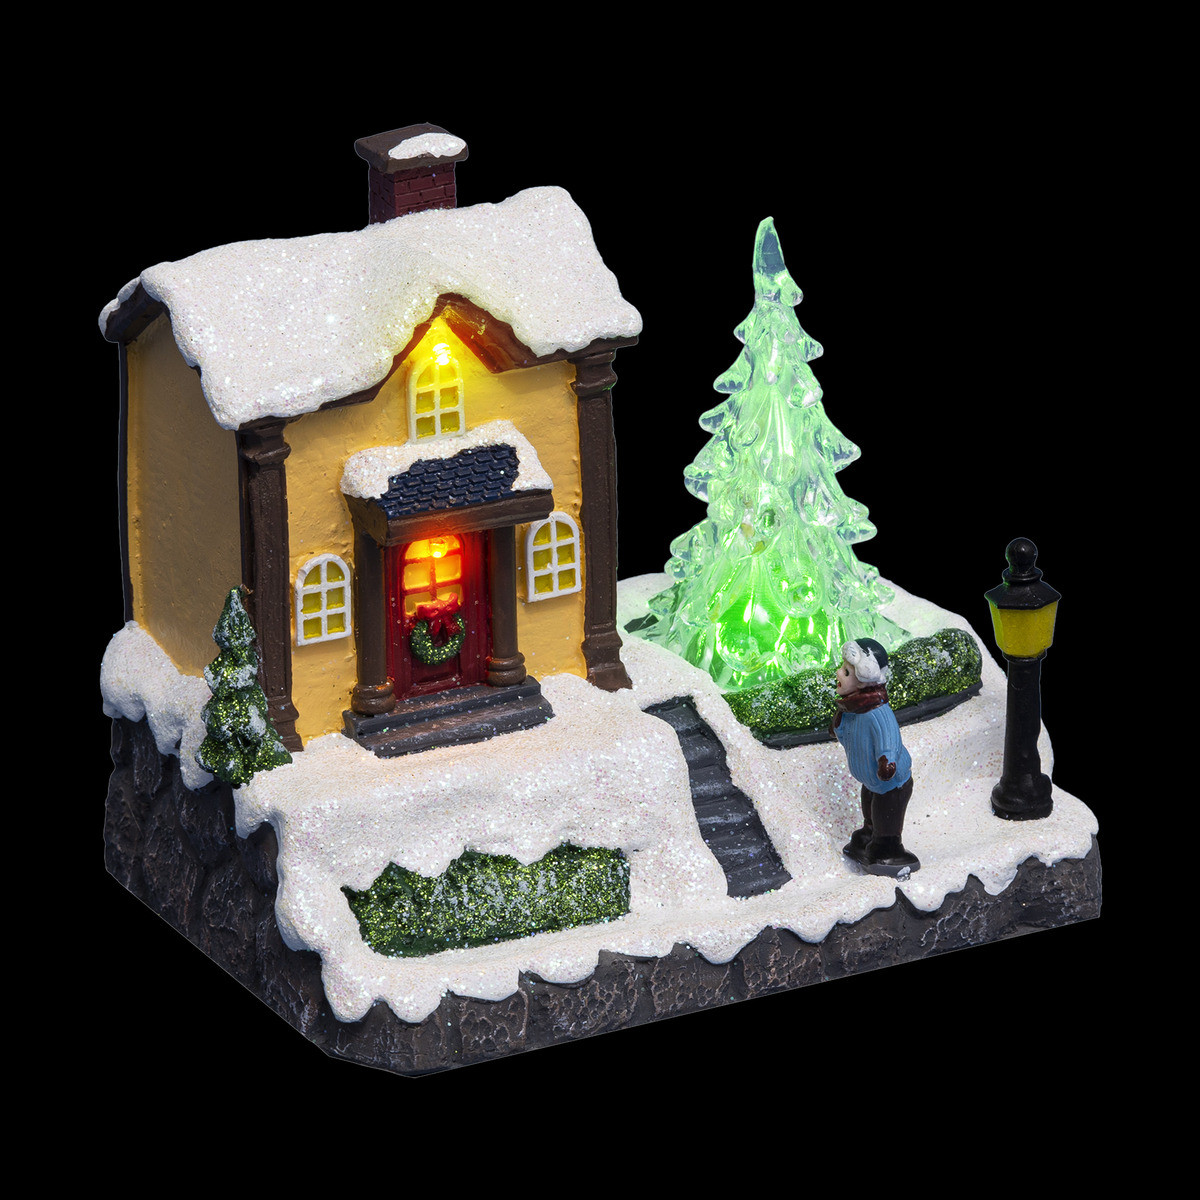 Accessoire lumineux pour Village de Noël Lot de 2 Sapins Vert lumineux LED  Blanc chaud